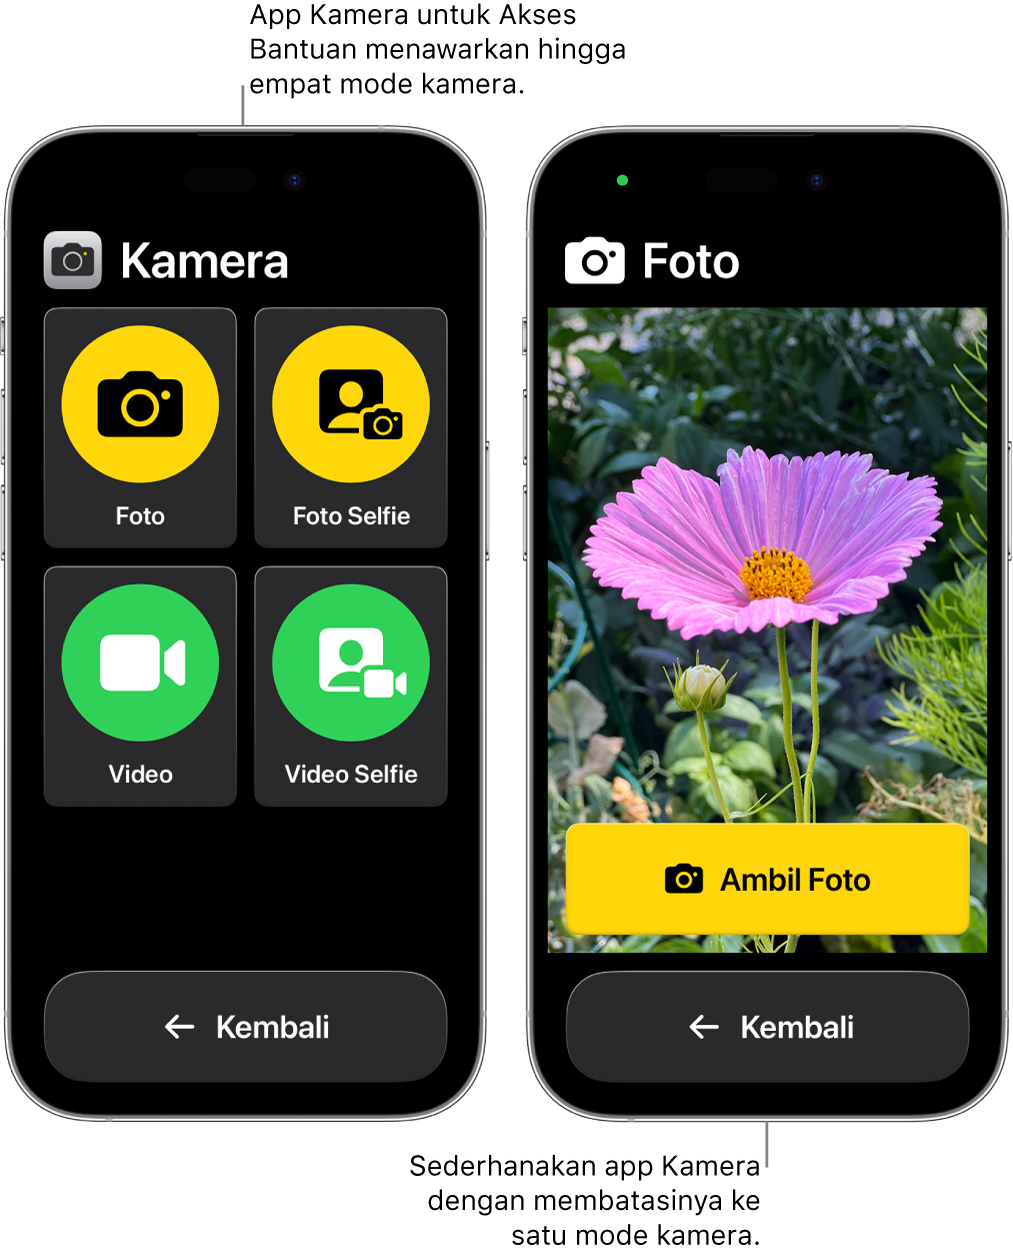 Dua iPhone dalam Akses Bantuan. Satu iPhone menampilkan app Kamera dengan mode kamera yang dapat dipilih pengguna, seperti Video atau Selfie Foto. iPhone lainnya menampilkan app Kamera dengan mode tunggal untuk mengambil foto.